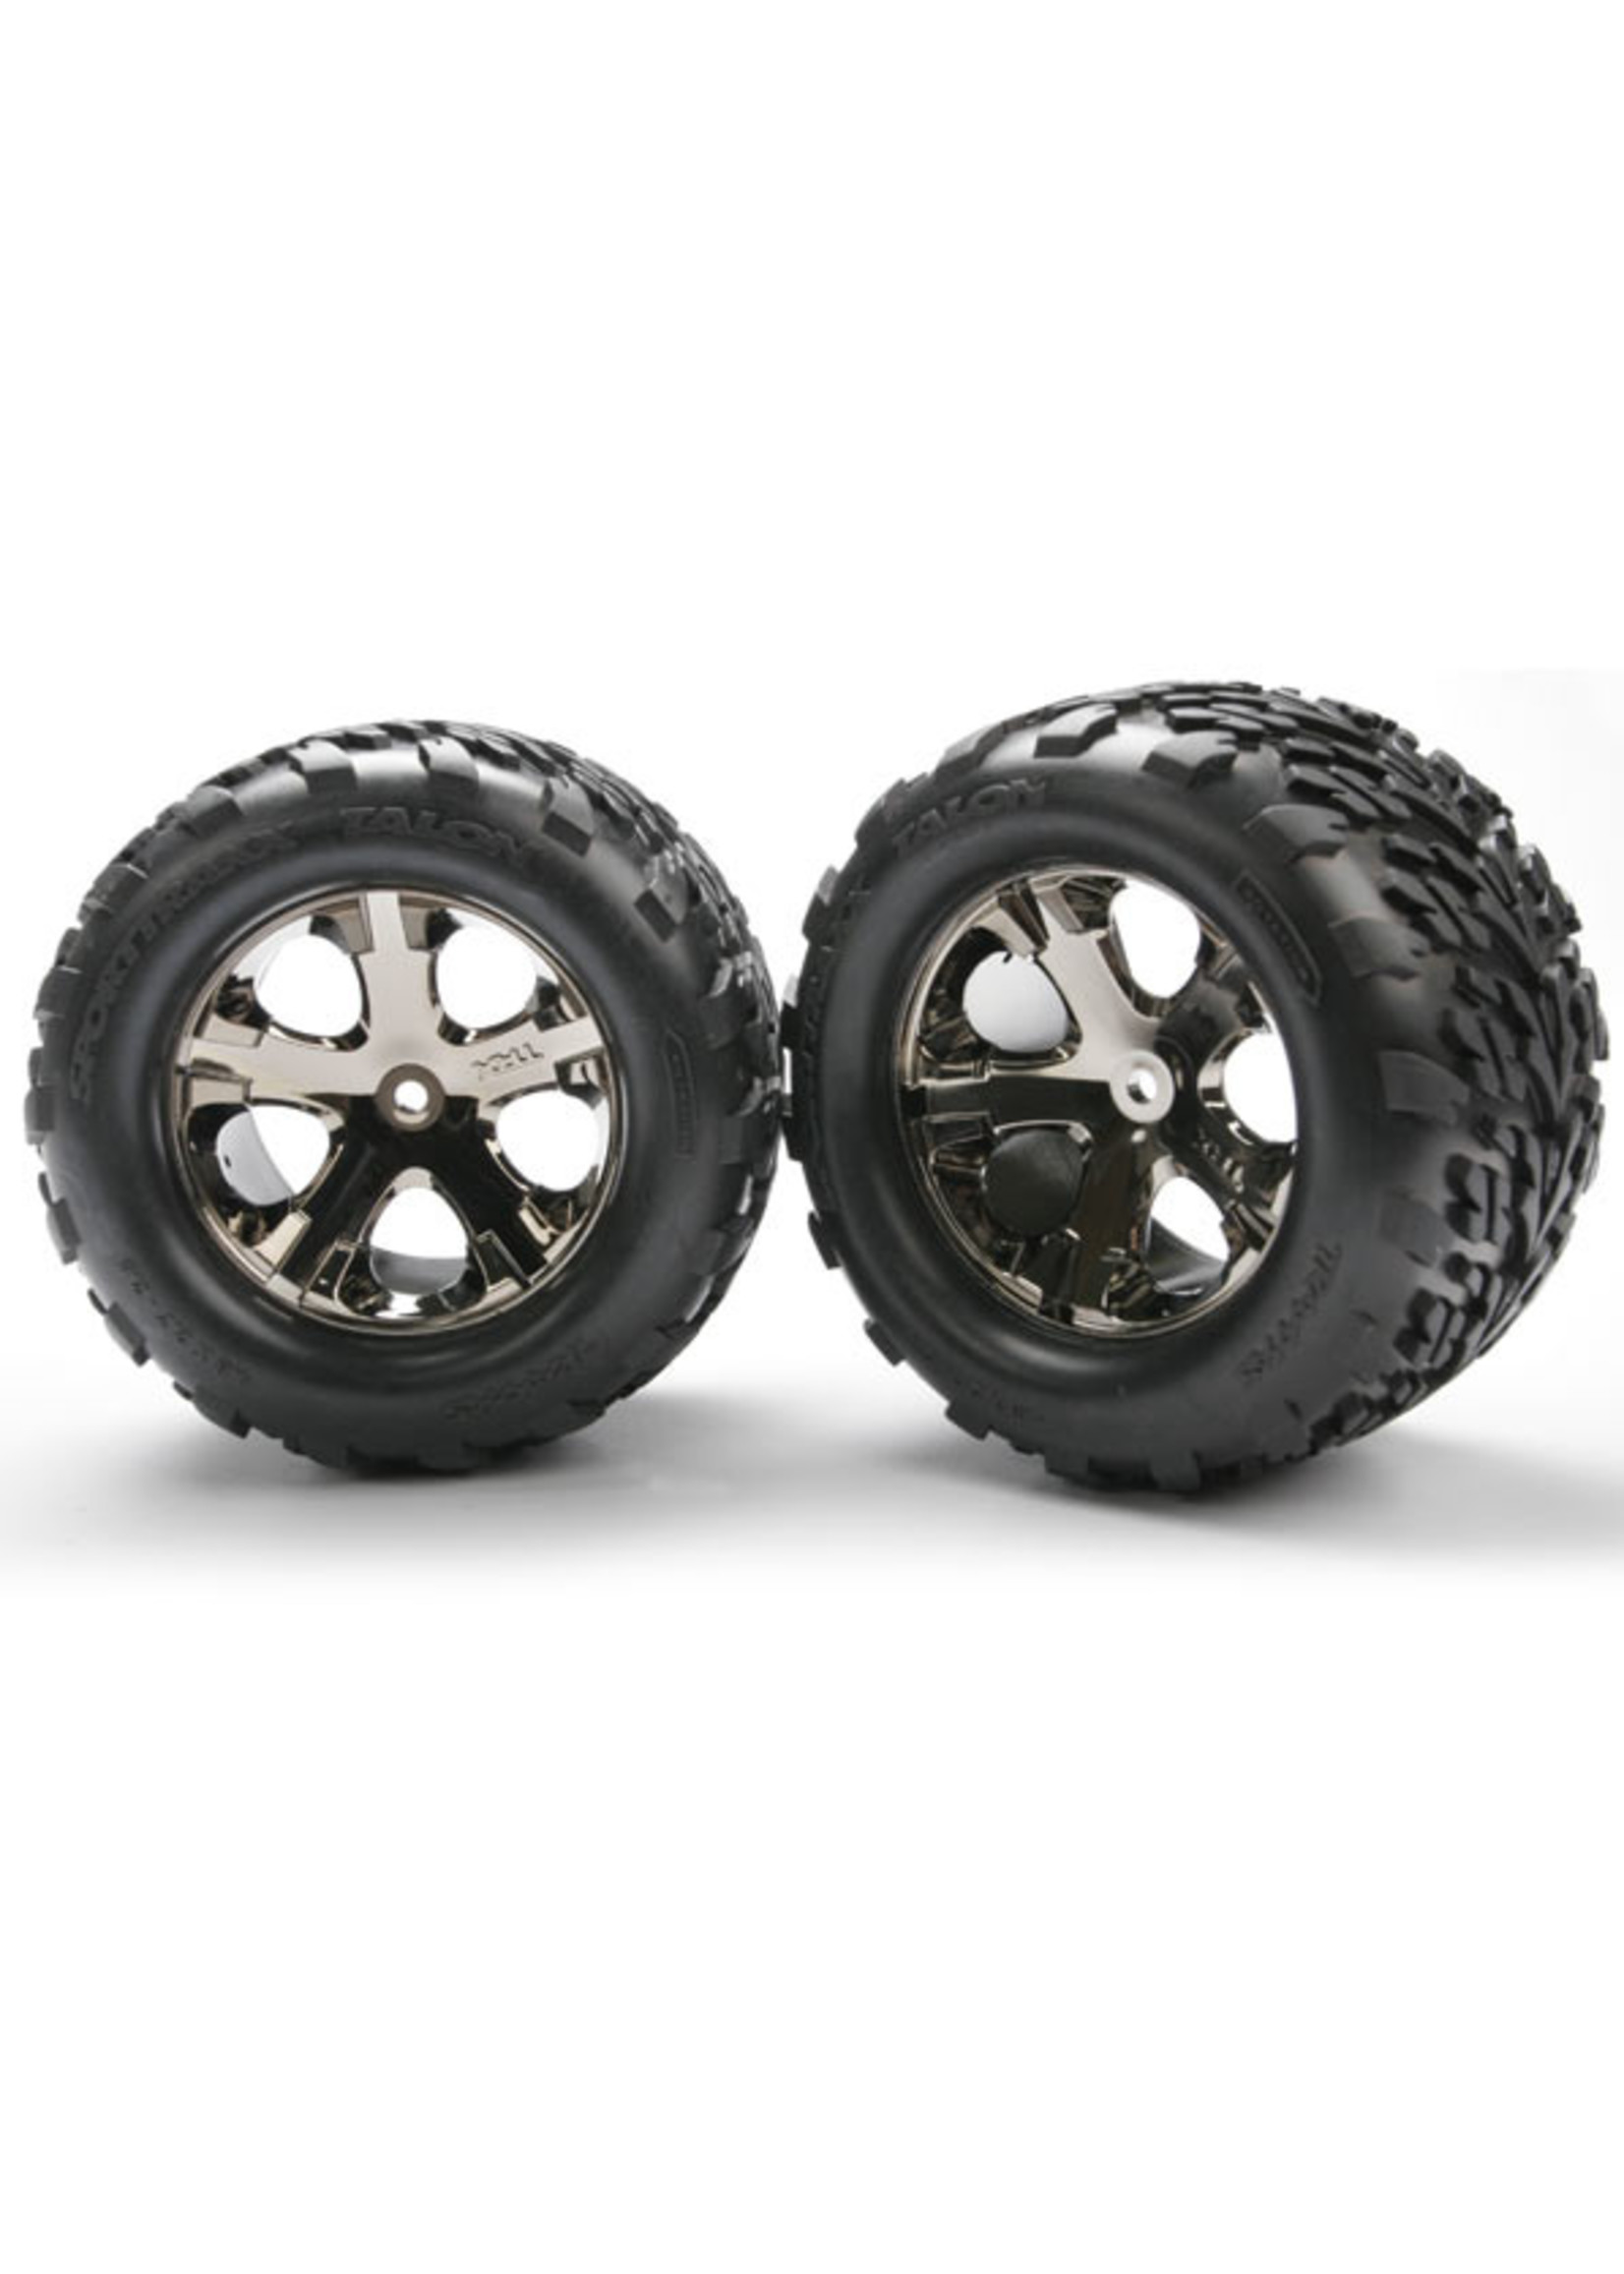 Traxxas 3668A - All-Star Black Chrome Wheels / Talon Tires